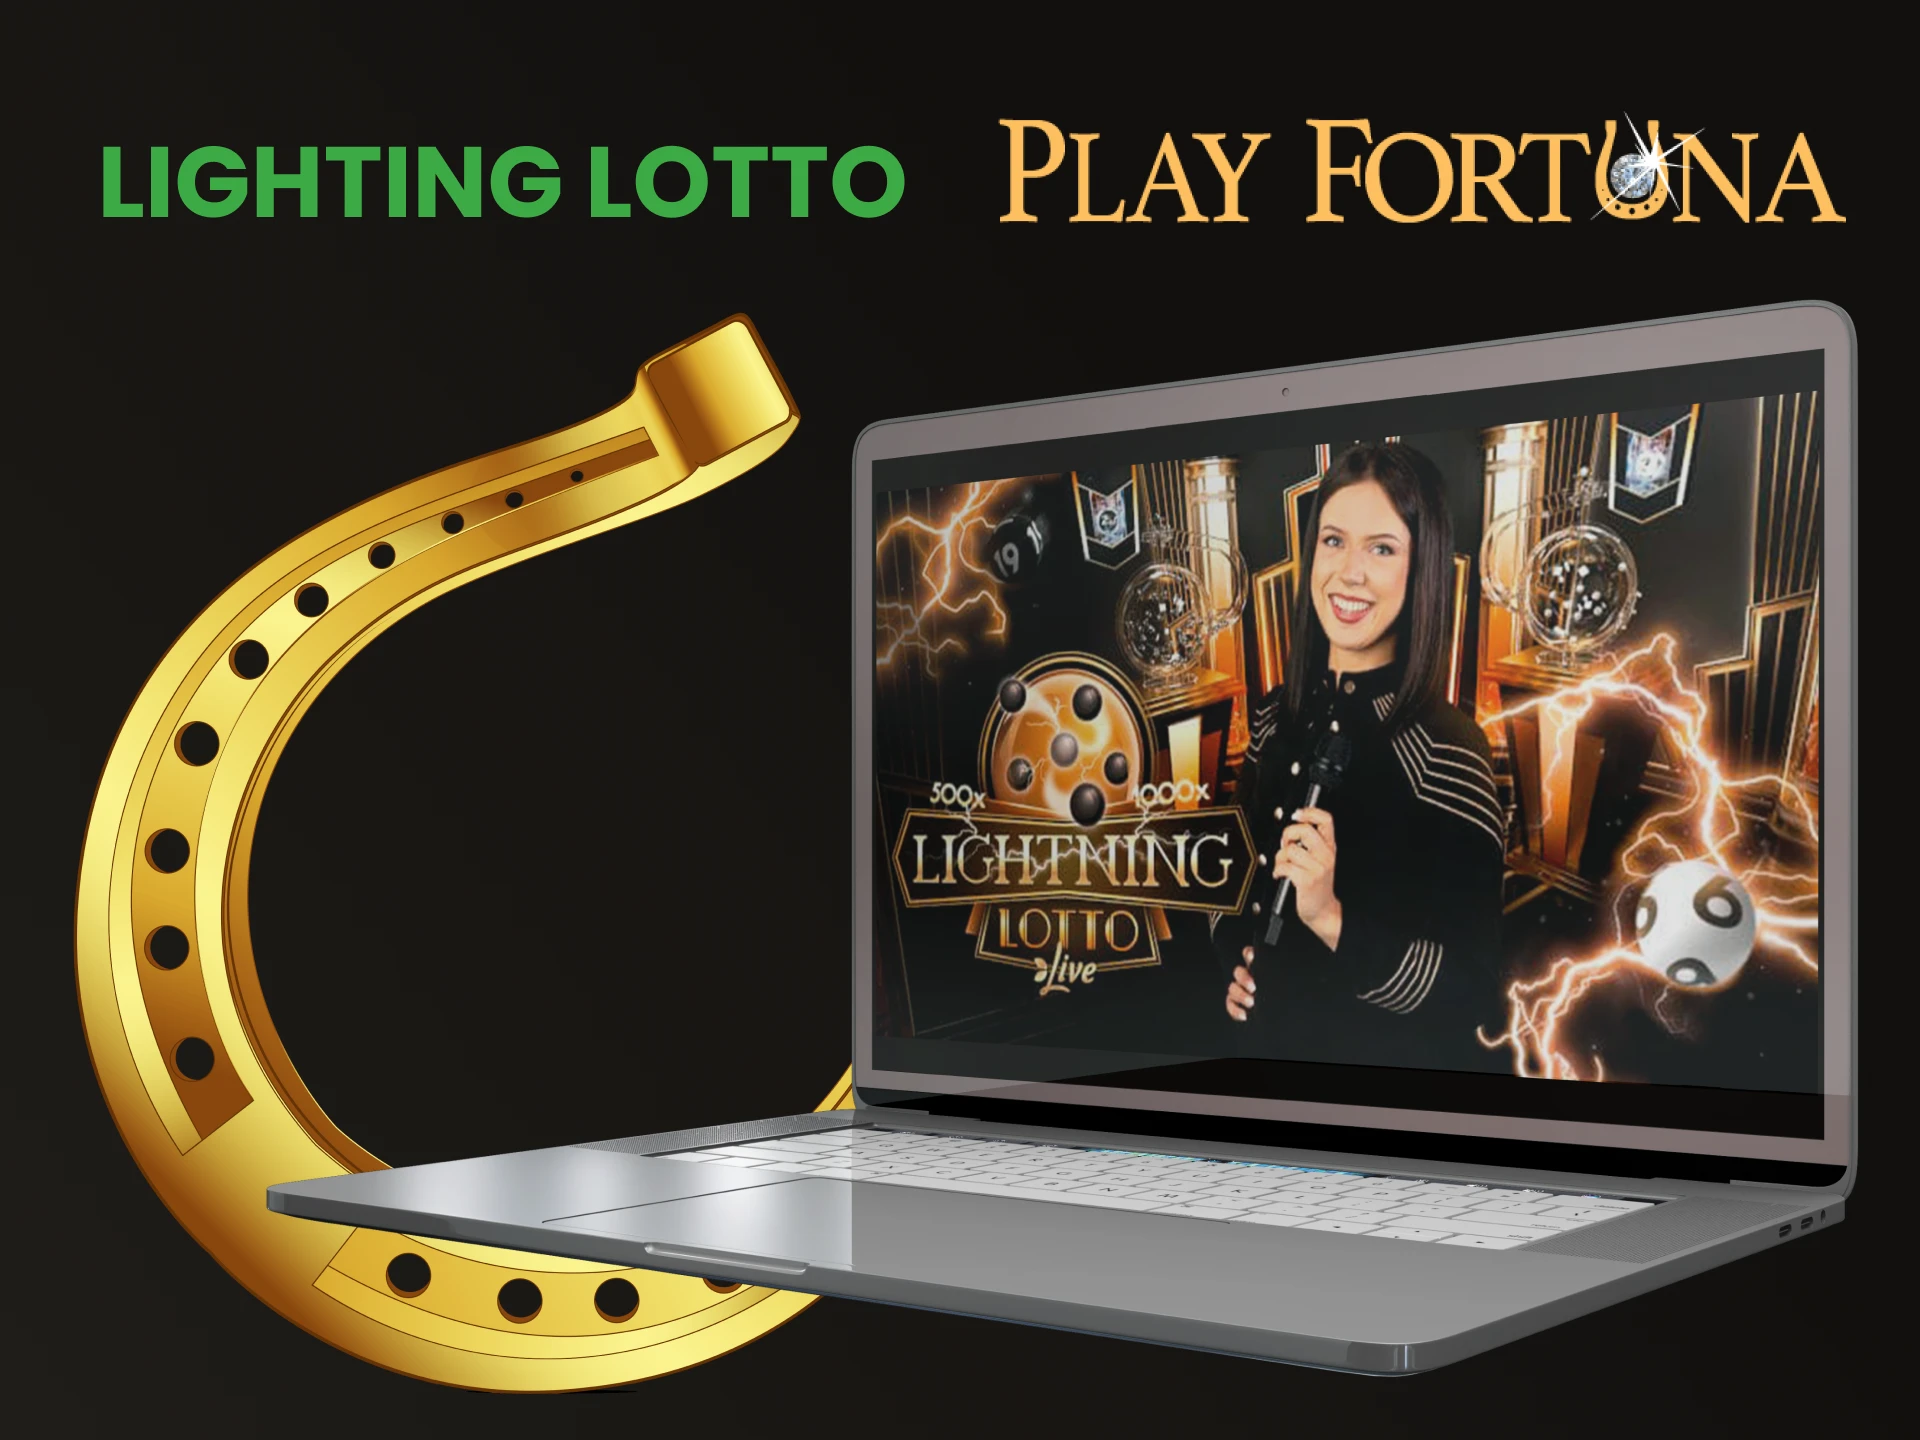 Jogue Lighting Lotto na seção de loteria do Play Fortuna.